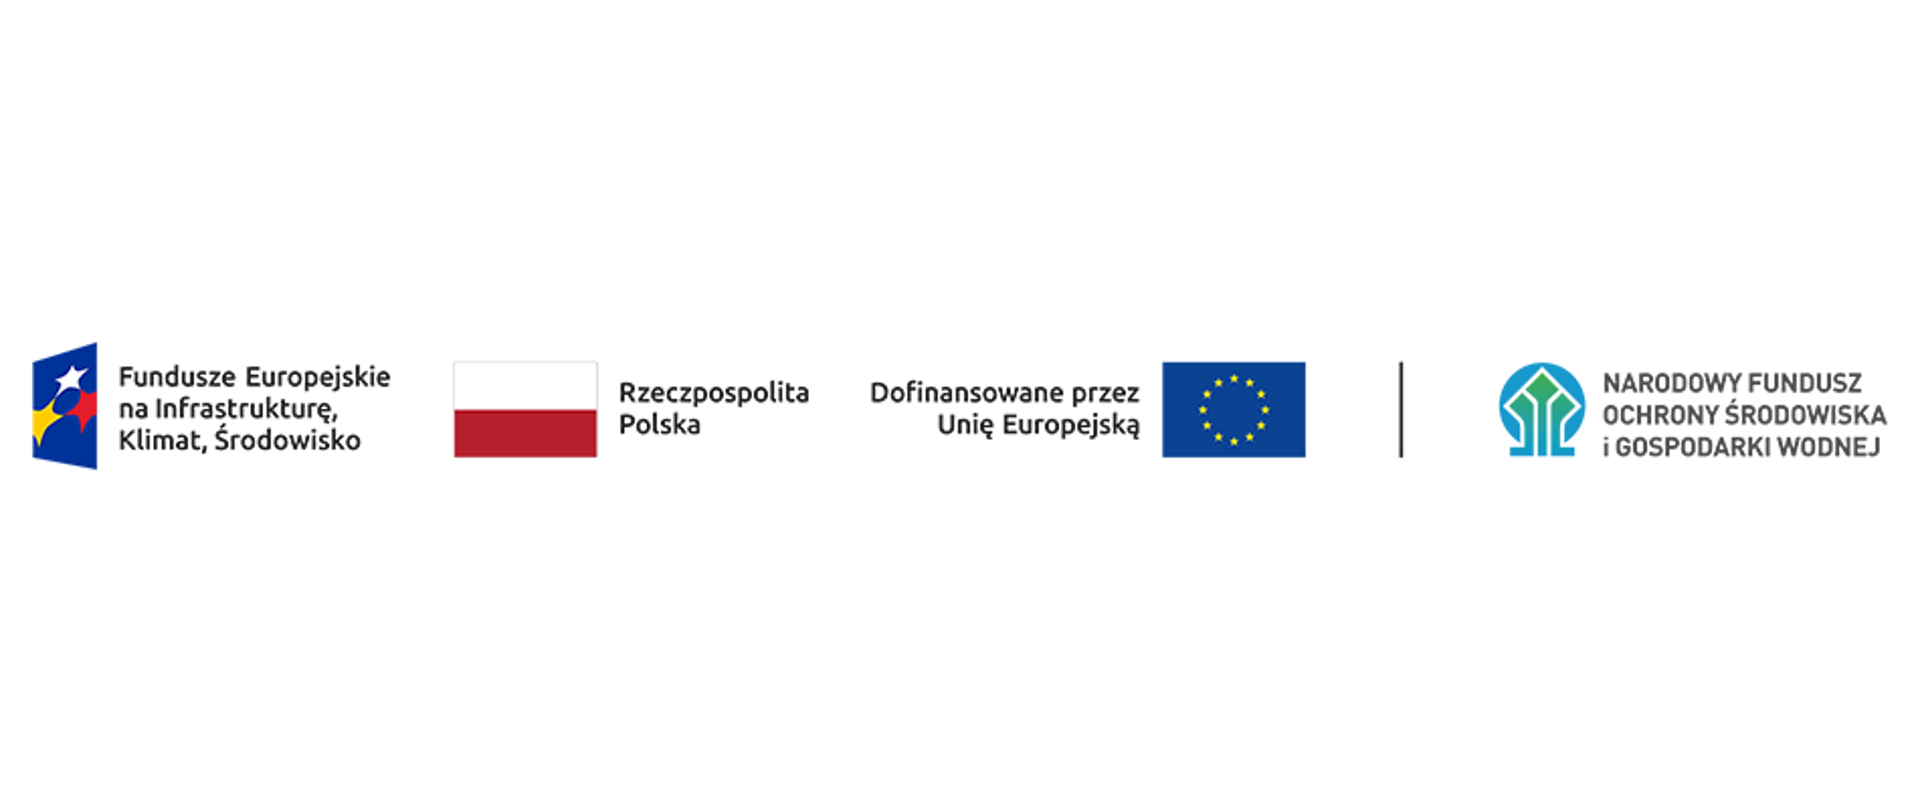 Ciąg znaków, od lewej: Fundusze Europejskie na Infrastrukturę, Klimat, Środowisko, Rzeczpospolita Polska, Dofinansowane przez Unię Europejską i Narodowy Fundusz Ochrony Środowiska i Gospodarki Wodnej